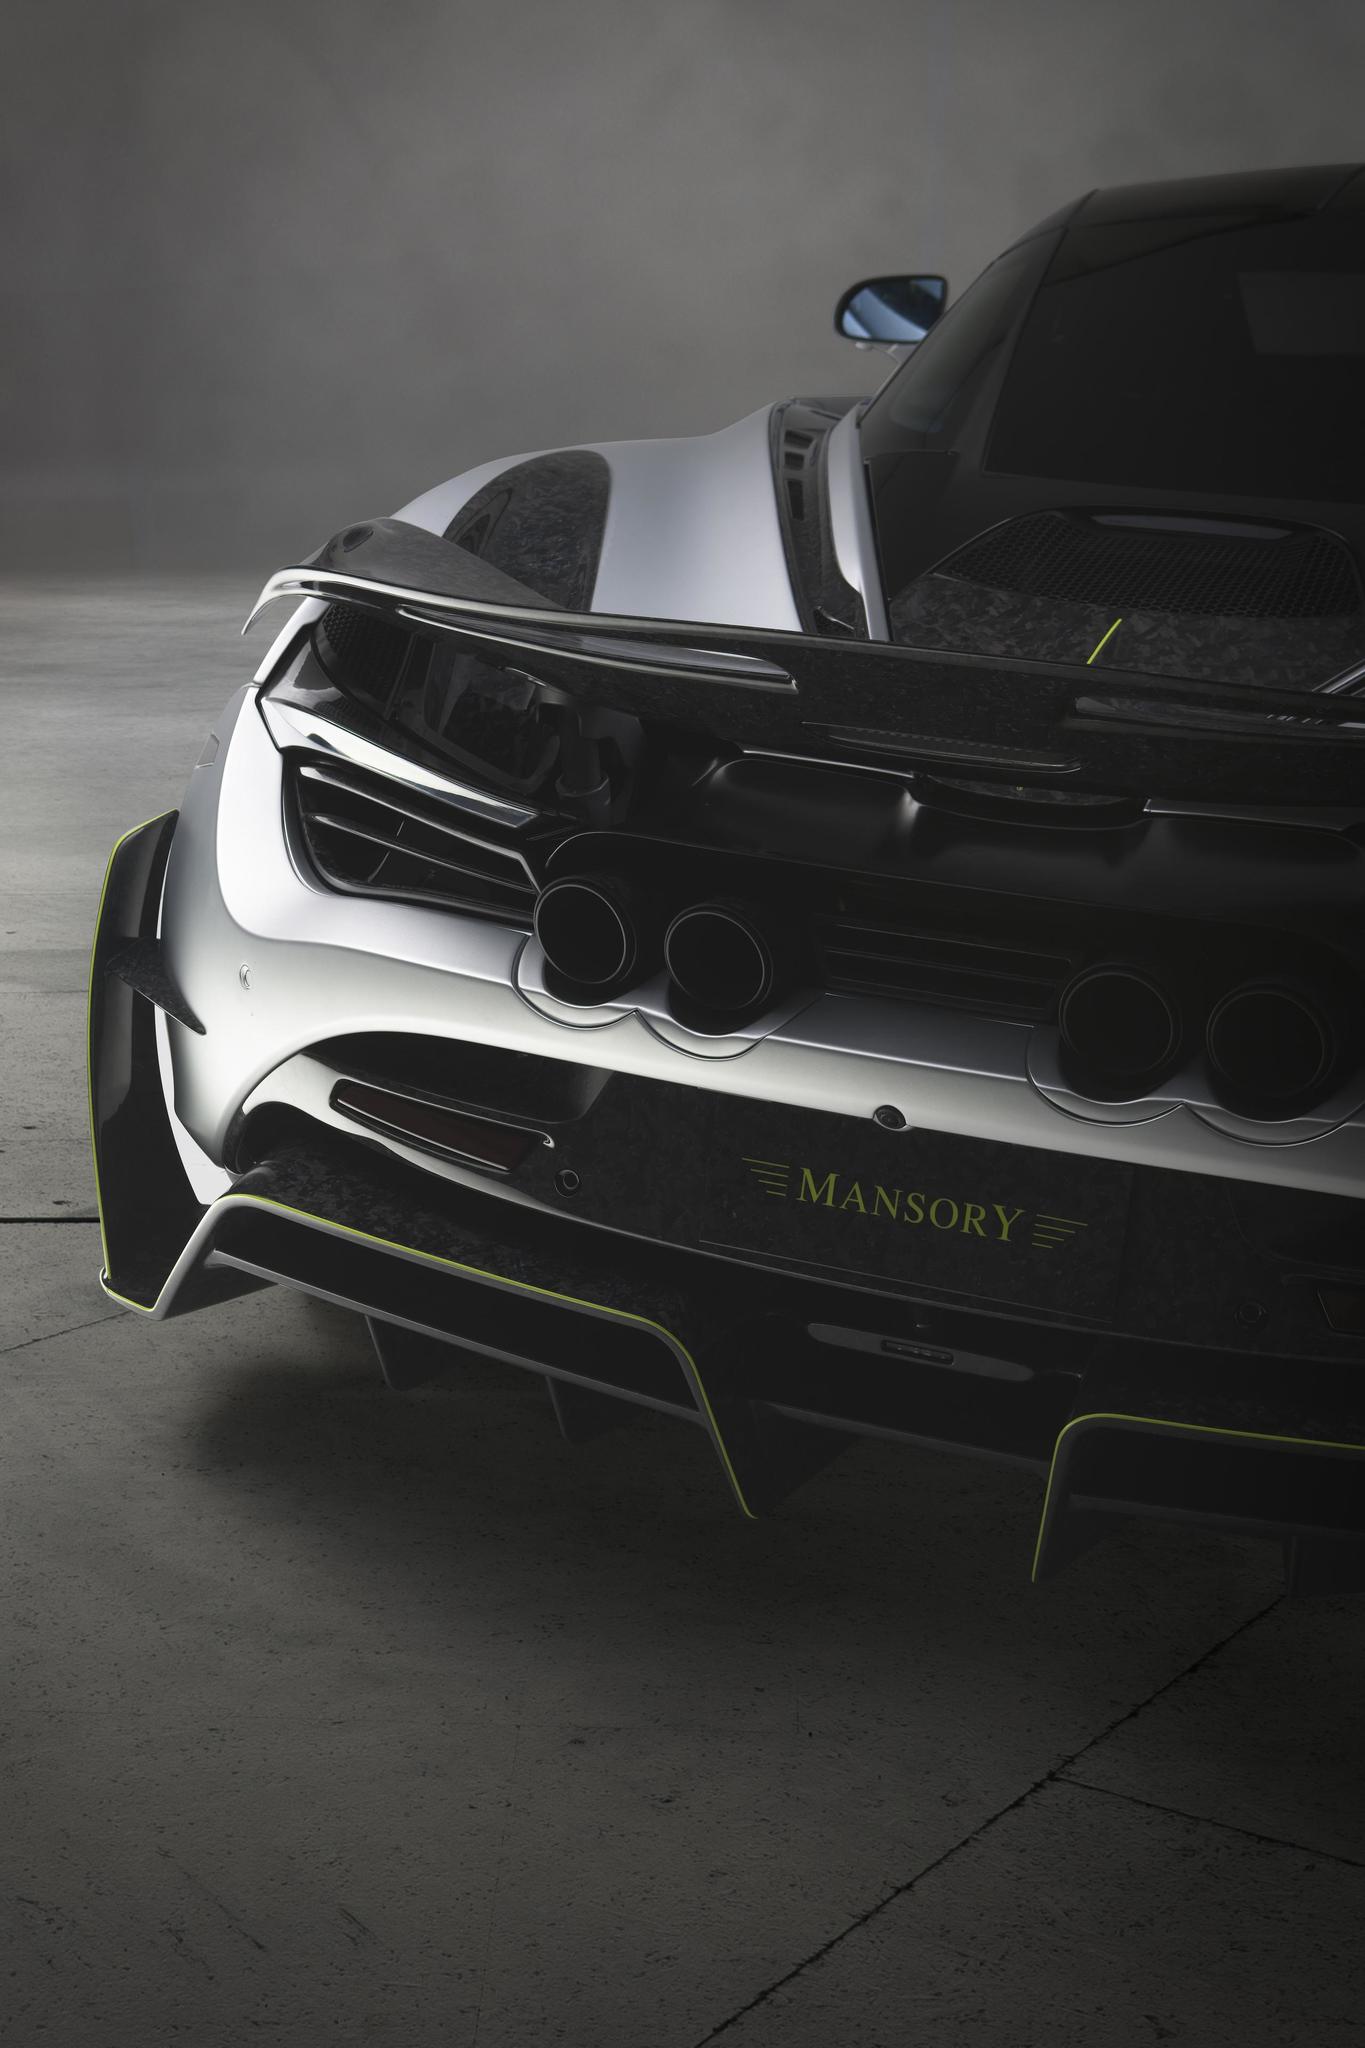 Mansory body kit for McLaren 720S latest model